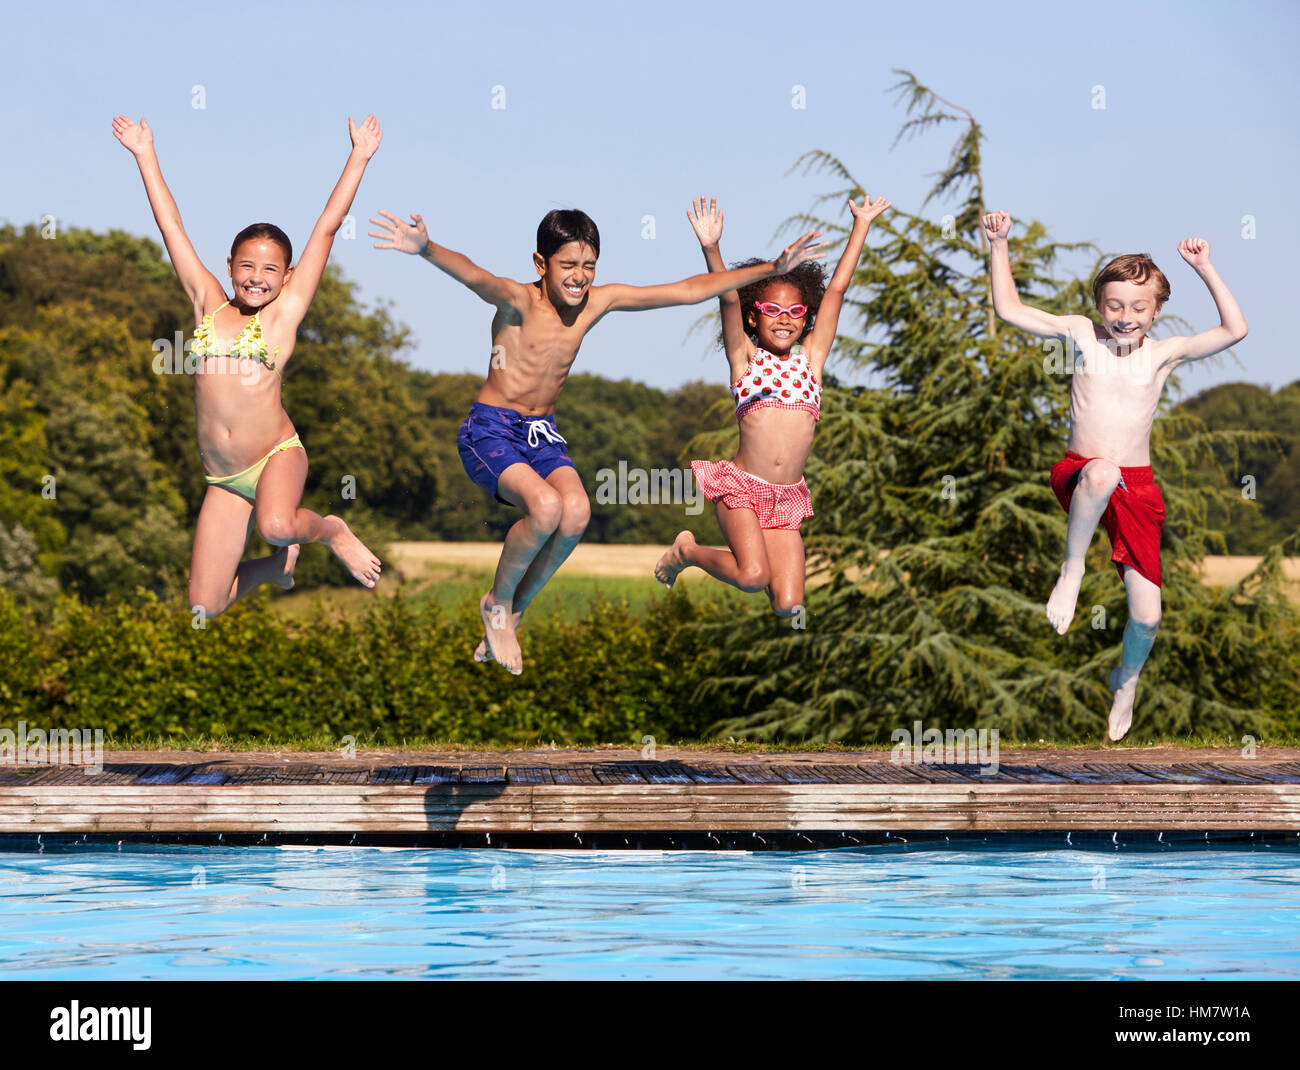 Groupe d'enfants de sauter dans une piscine extérieure Banque D'Images